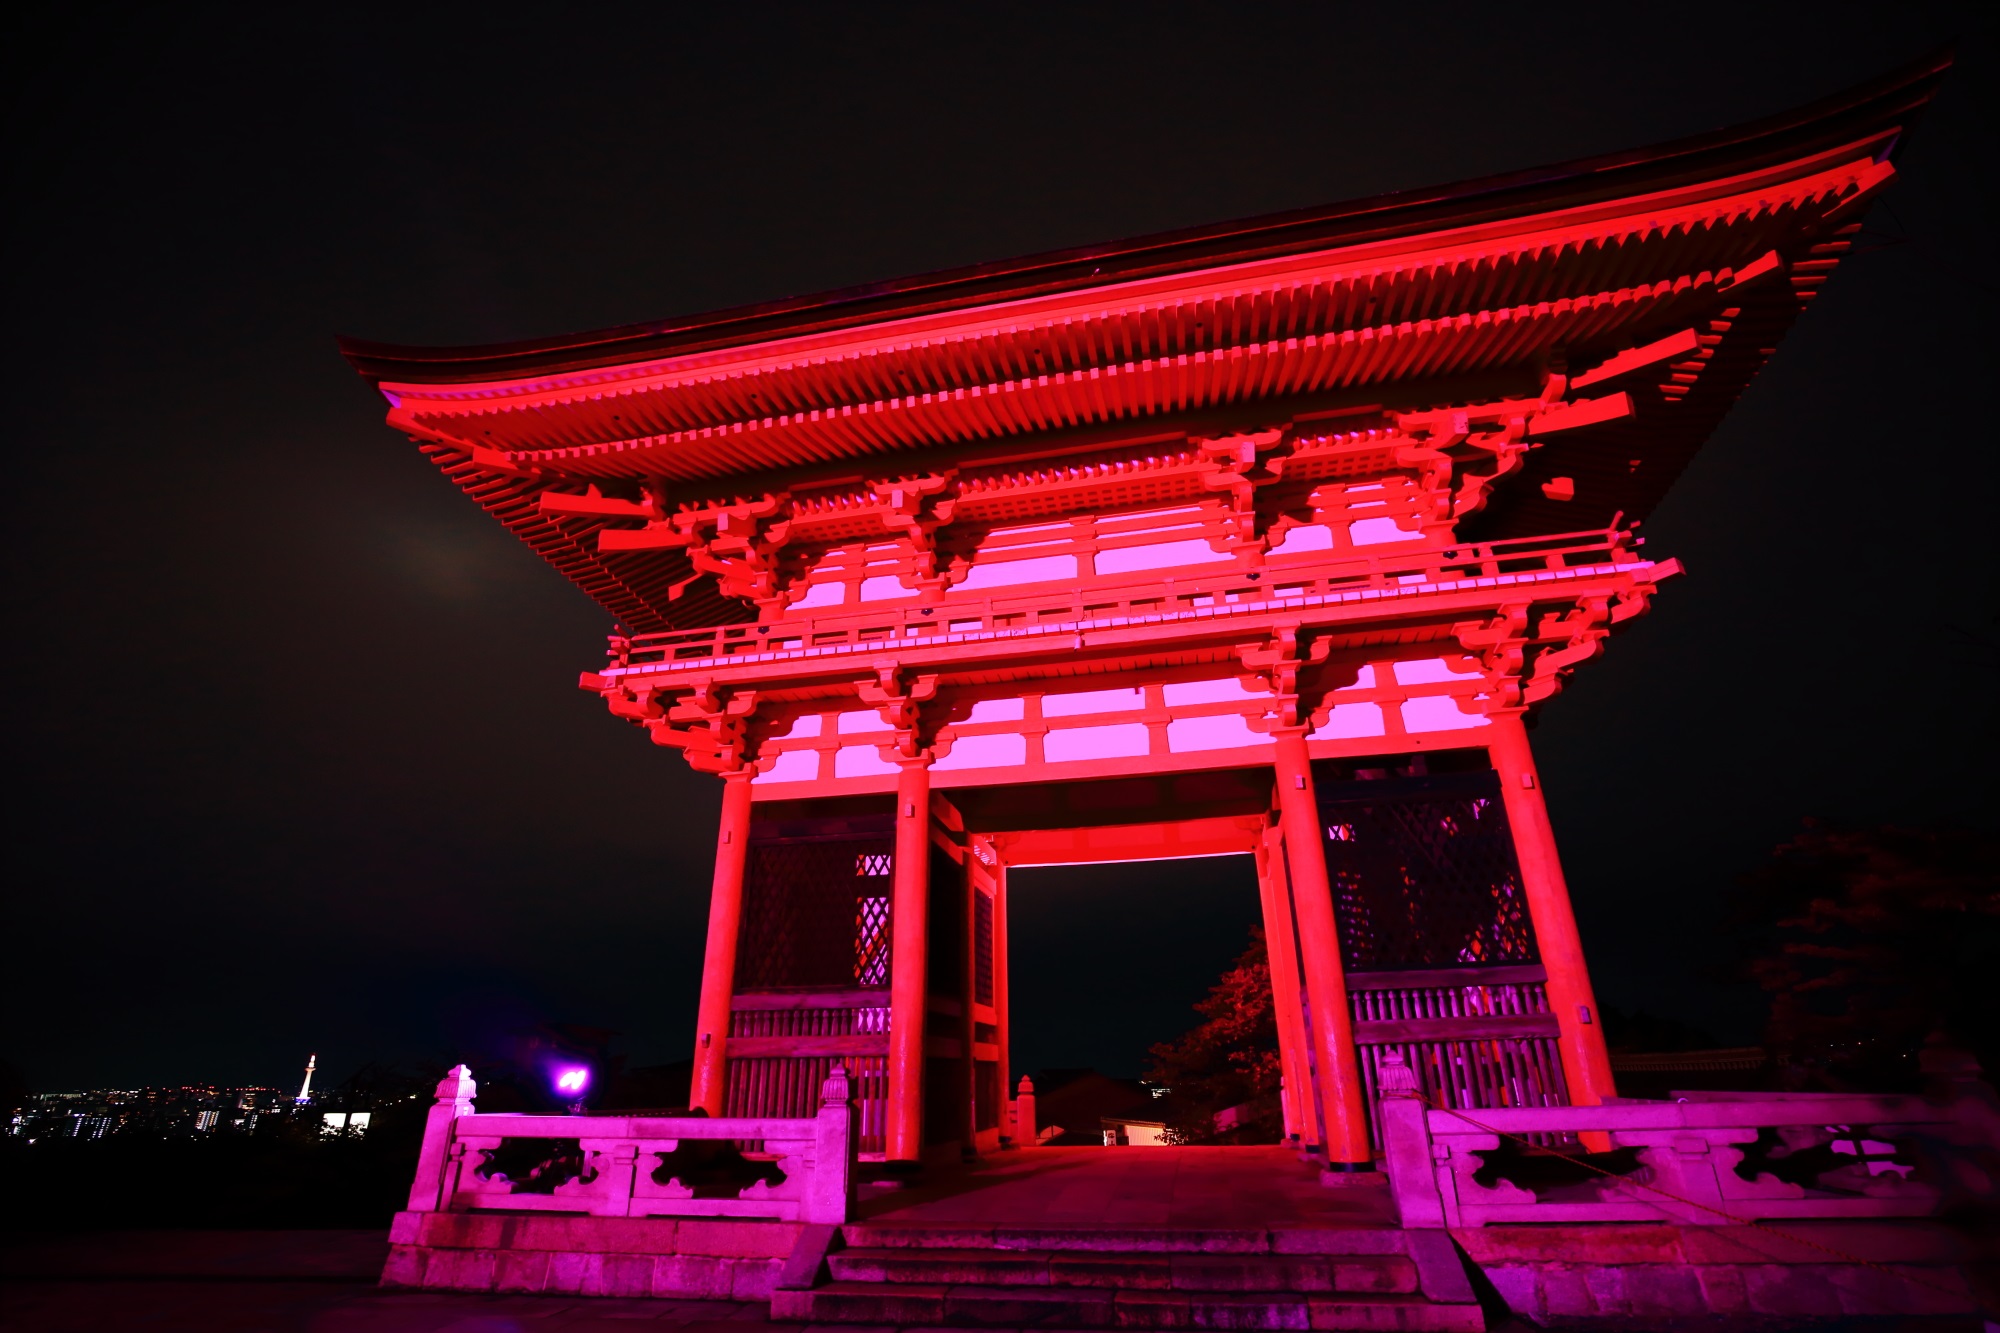 ピンクリボンライトアップの清水寺のピンクの仁王門と京都タワー